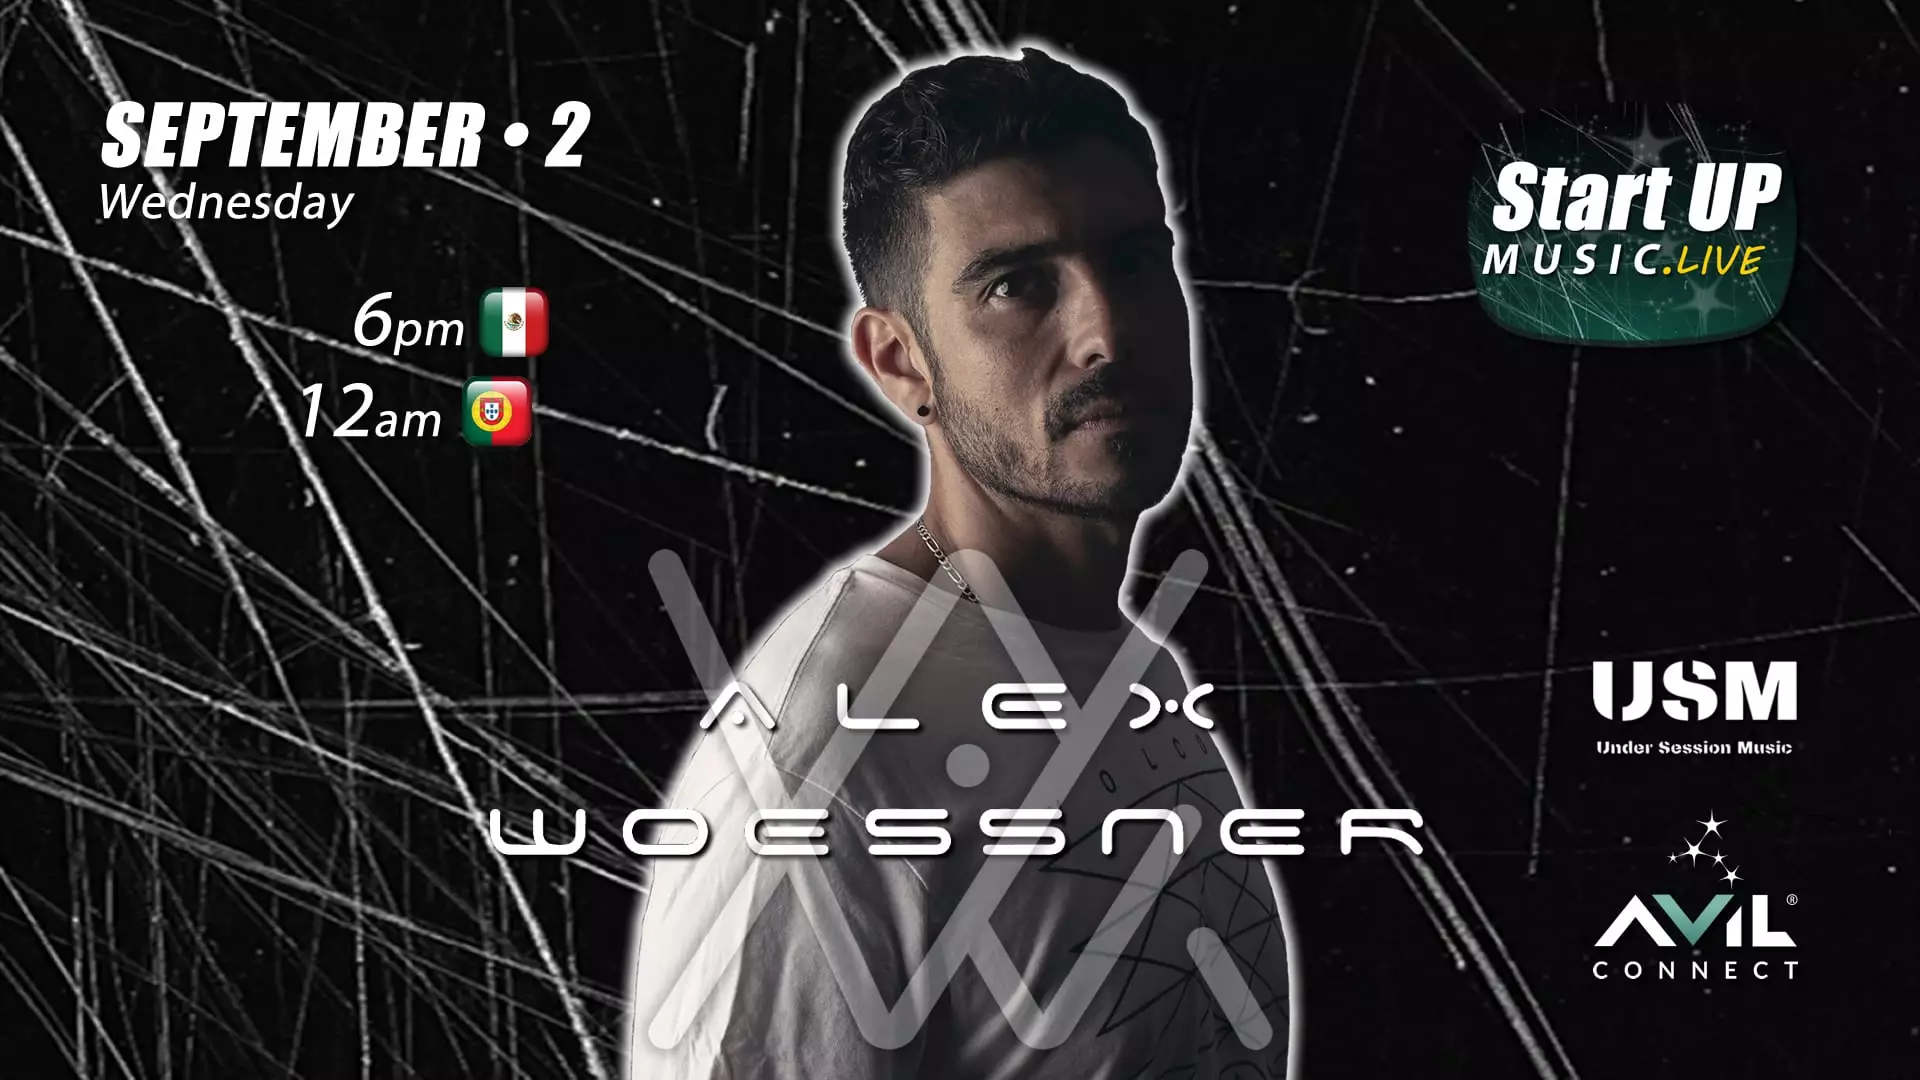 DJ Alex Woessner